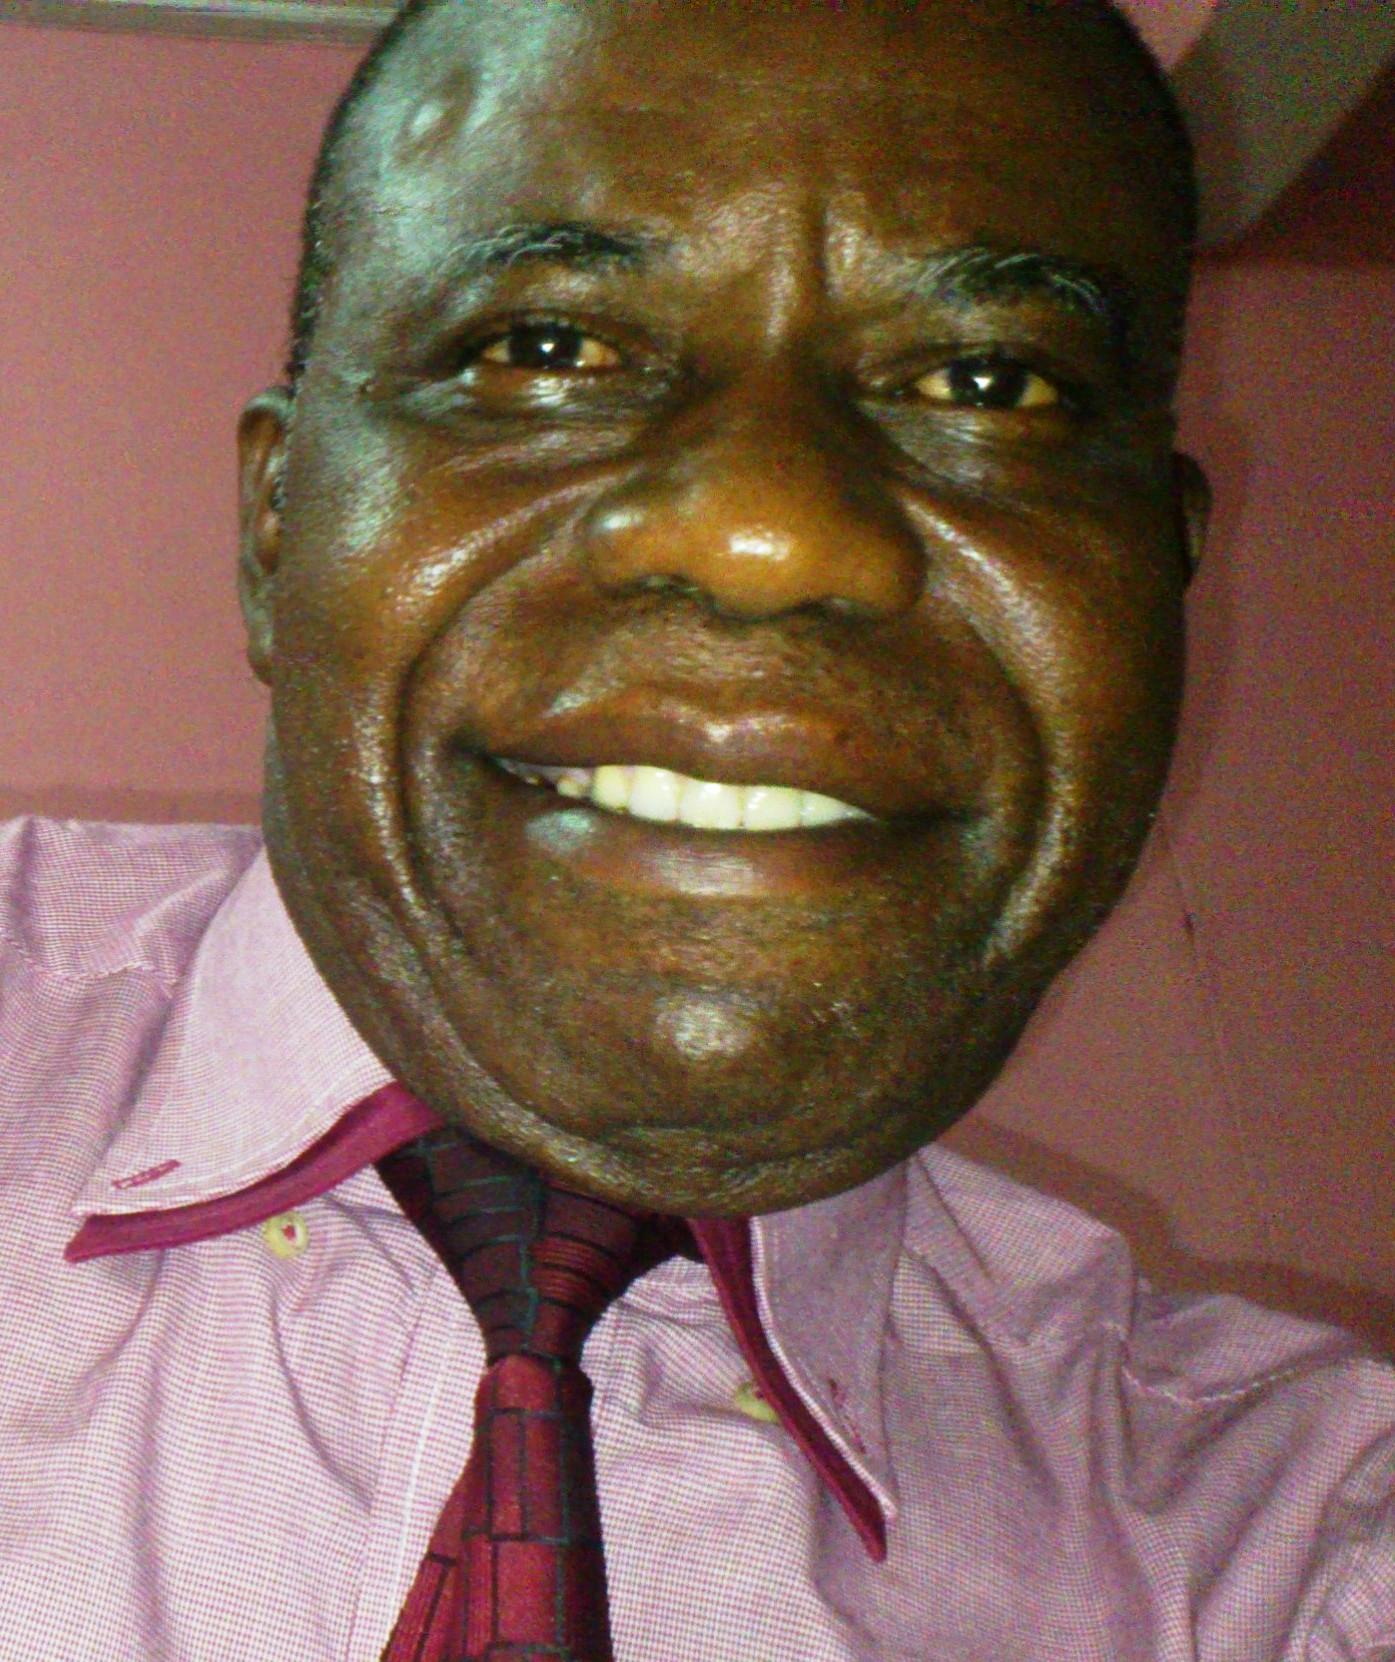 Membre co-fondateur du parti politique UDPS 
Porte-parole des Pionniers de ce parti
Ancien vice-ministre du Plan
Ancien parlementaire sous la Transition (HCR/PT